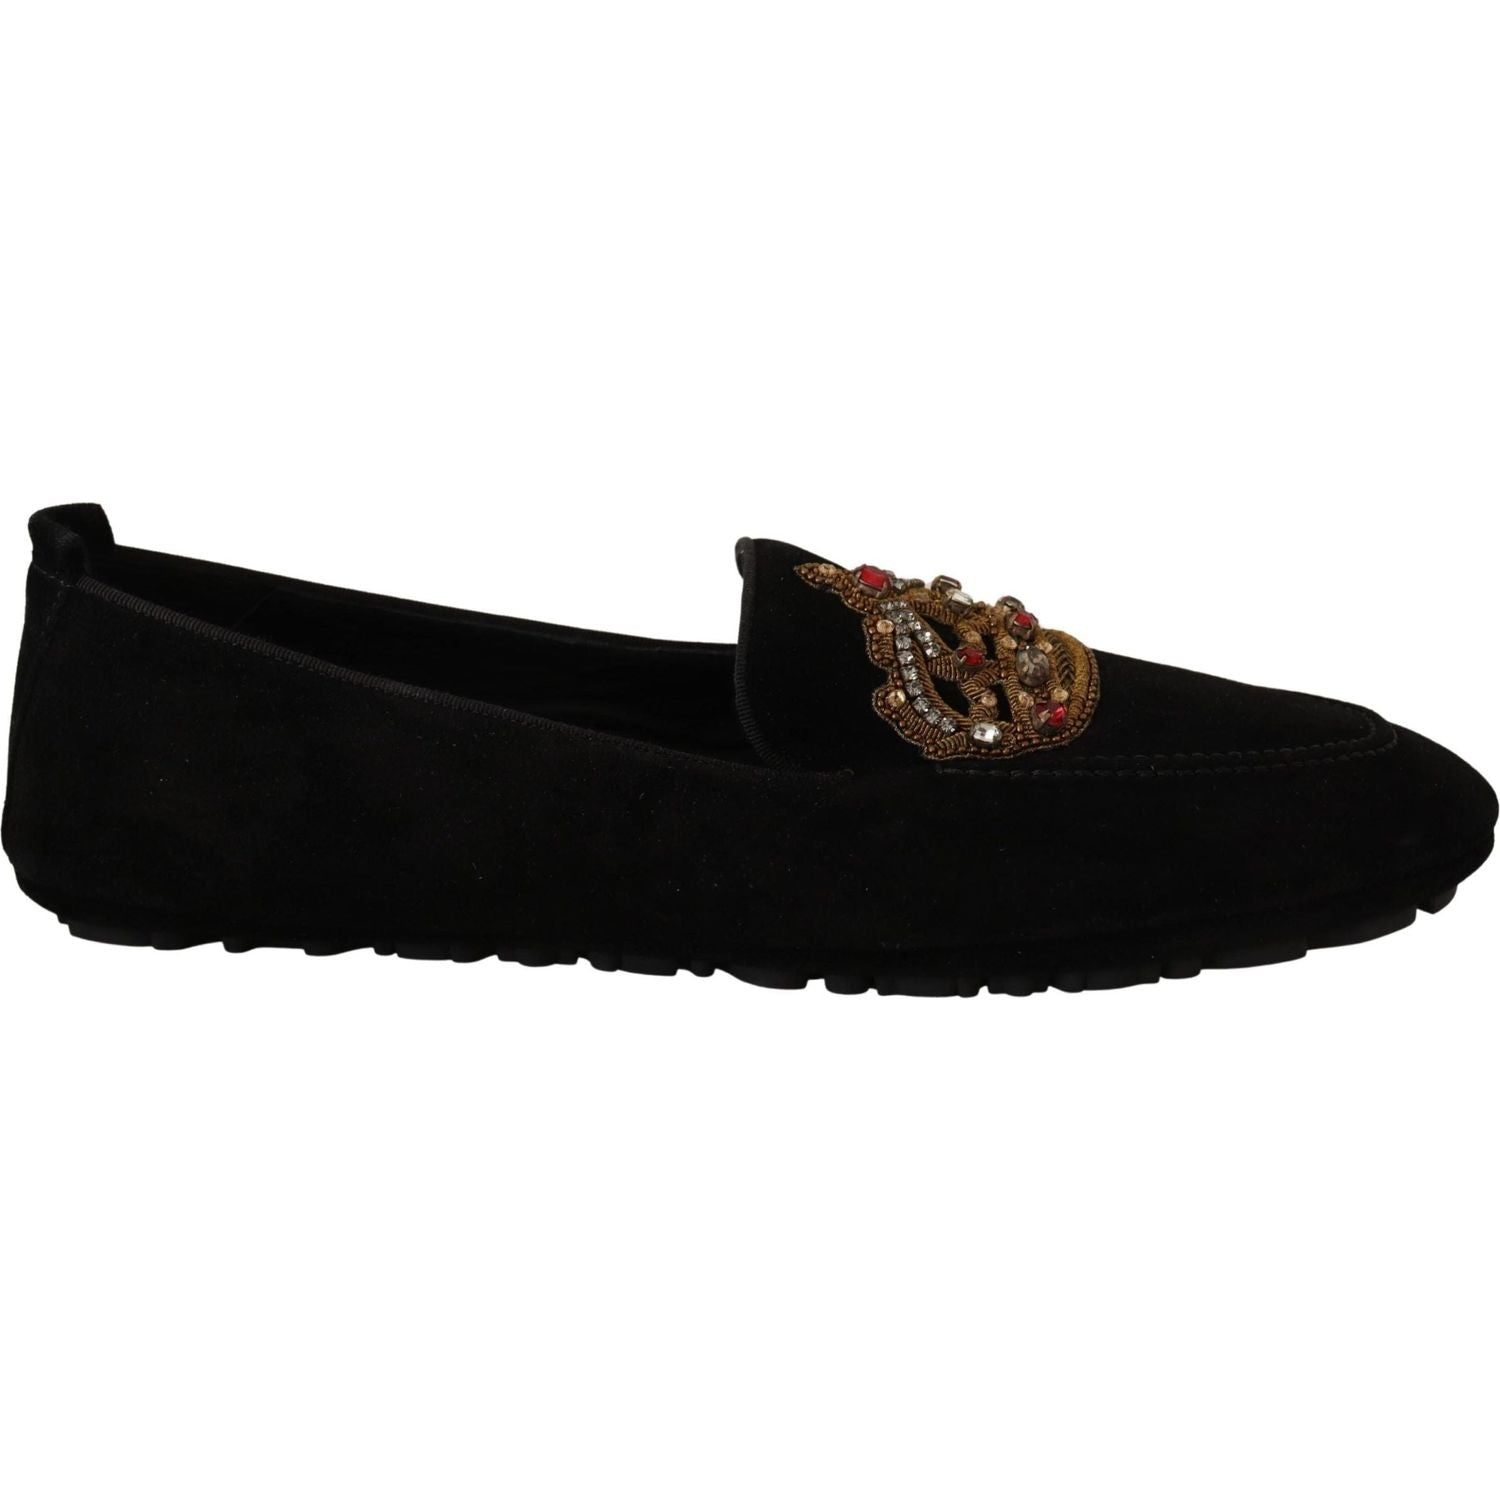 Dolce & Gabbana | Black Leather Crystal Gold Crown Loafers Shoes | 729.00 - McRichard Designer Brands